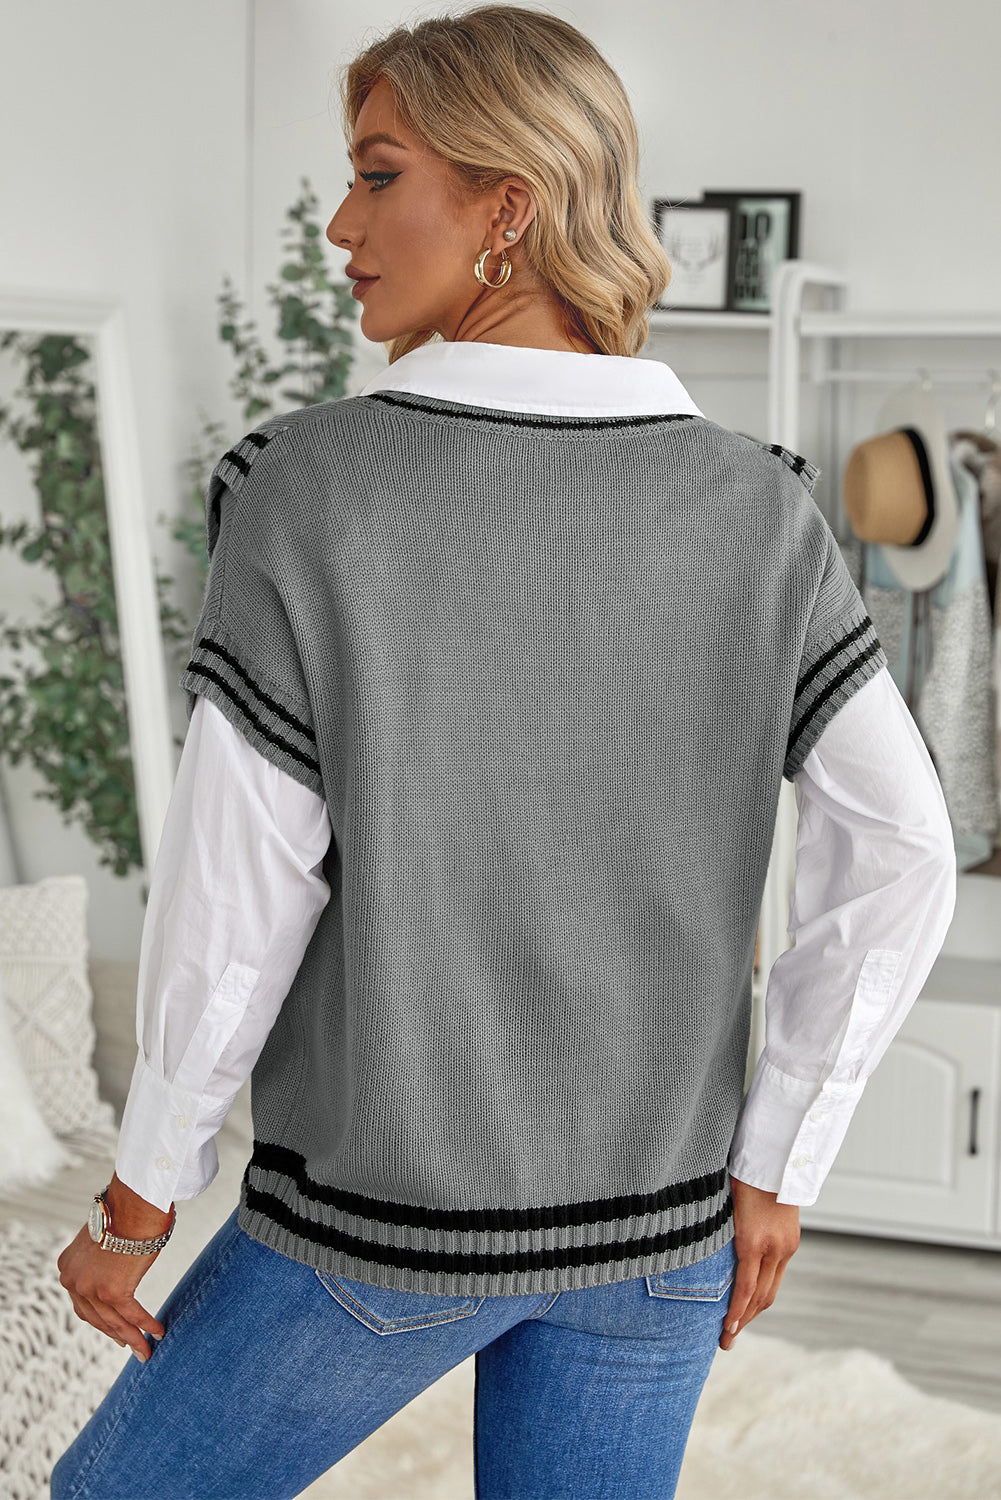 Siv pulover s kratkimi rokavi in ​​obrobami s kontrastnimi črtami v izrezu